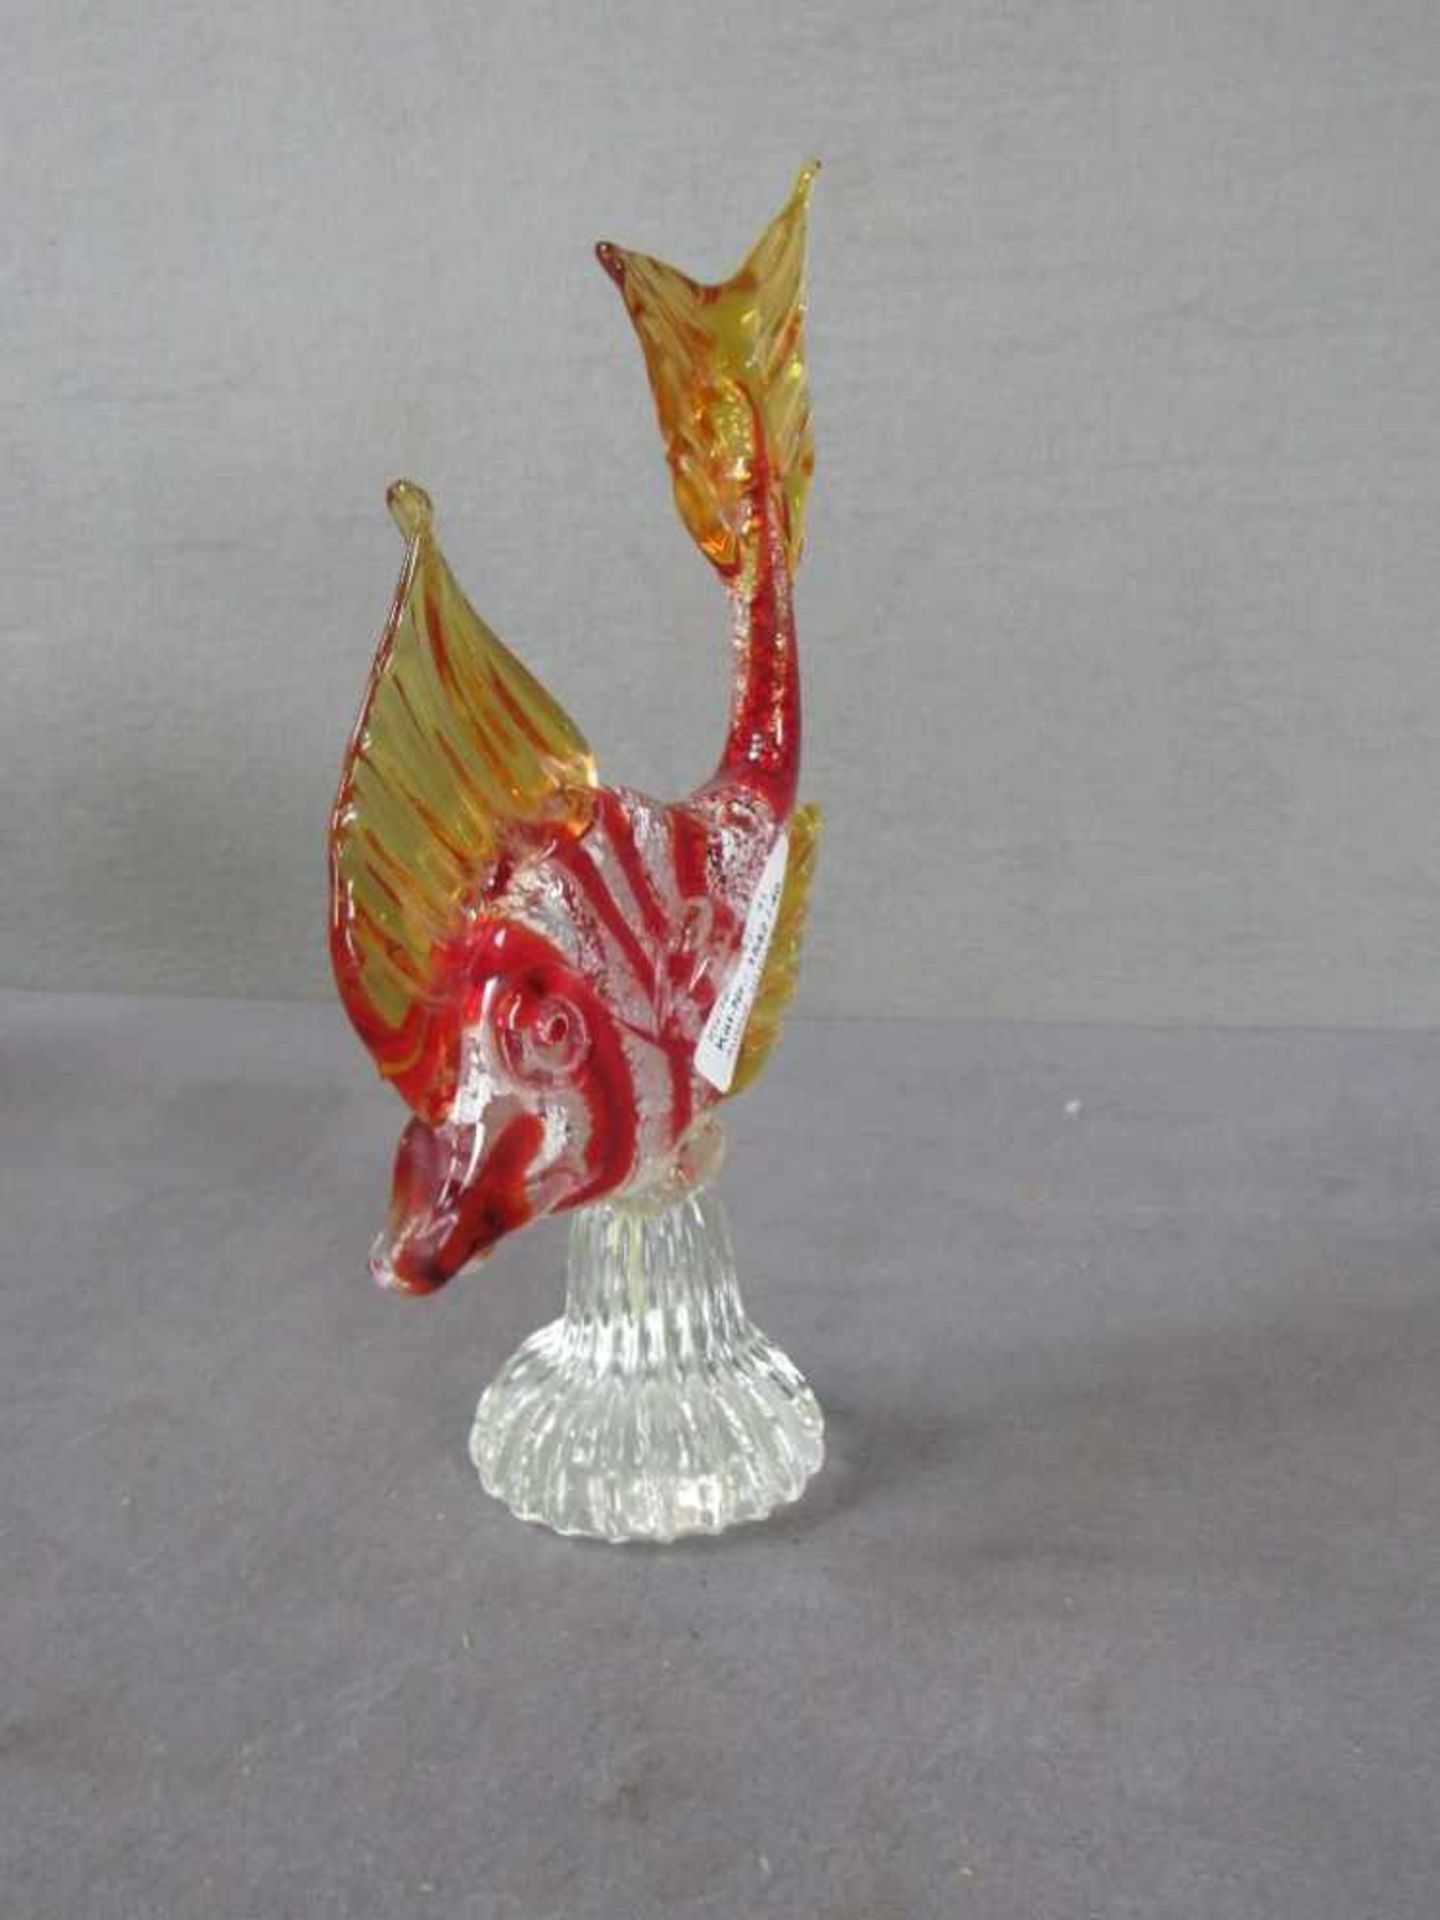 Glasskulptur Fisch gelabelt Venedig Silberflitter 26cm hoch - Bild 2 aus 2